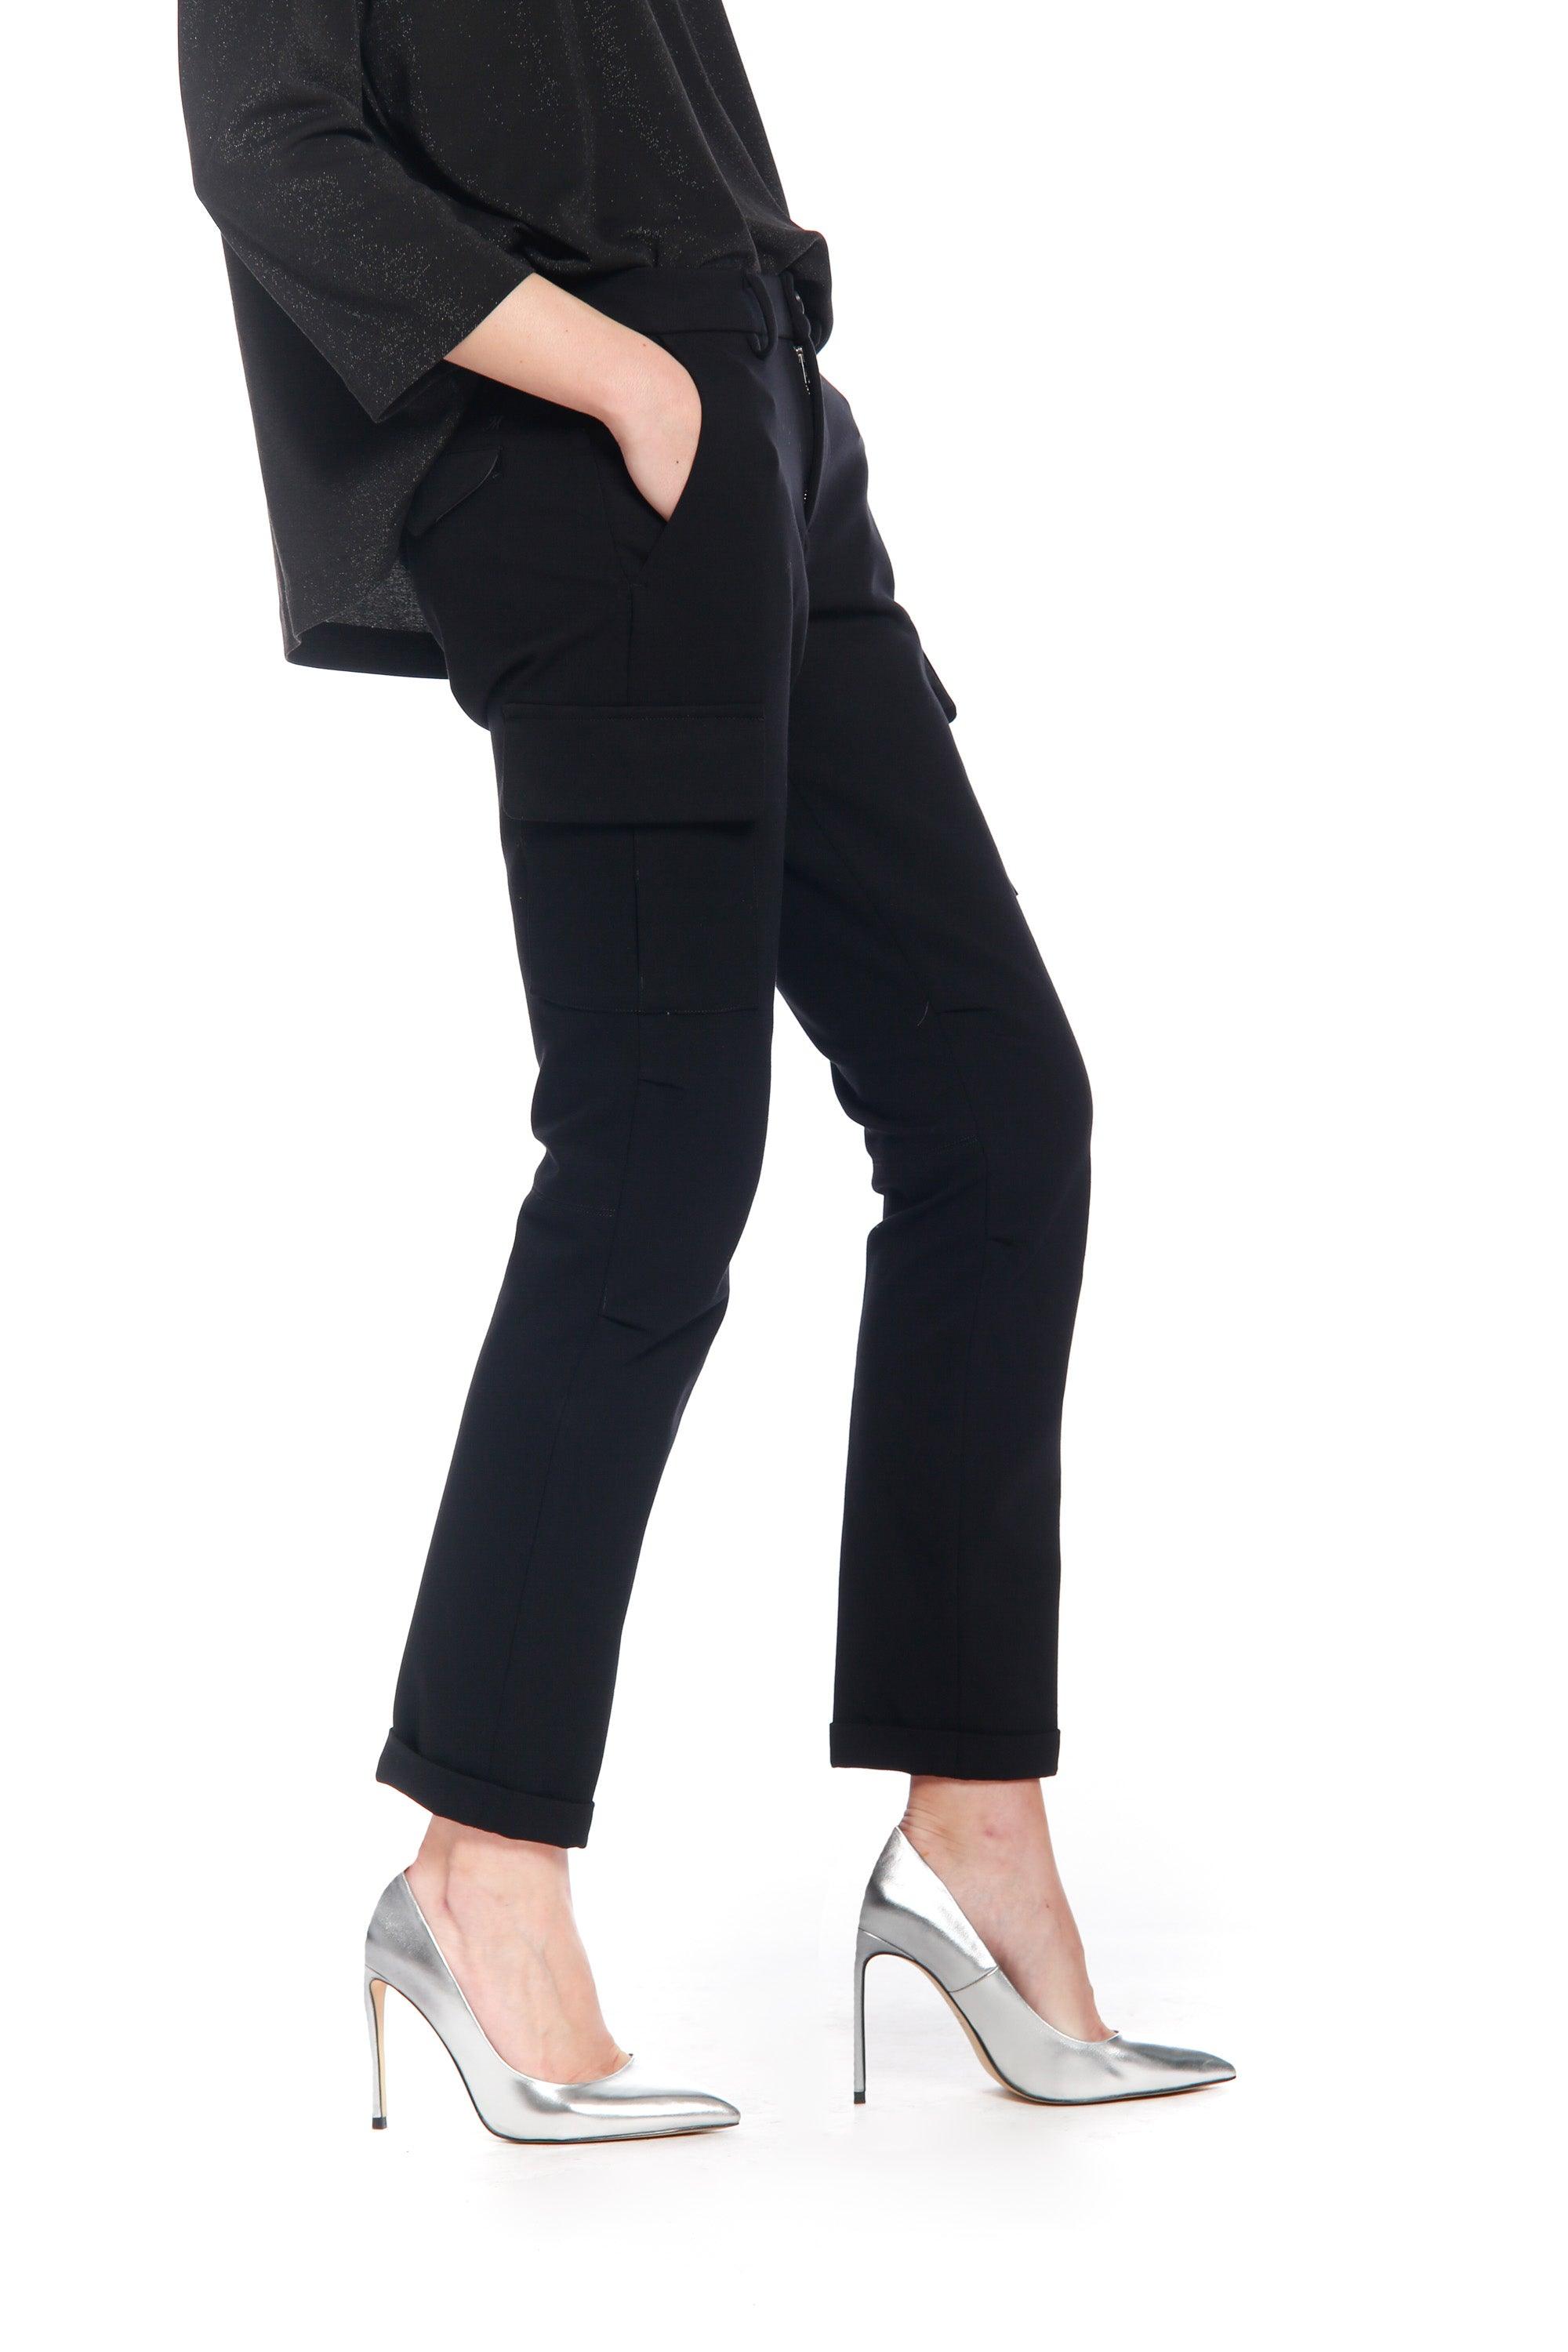 Bild 1 der Damen- Cargo  Hose aus Jersey Schwarz Modell Chile City von Mason’s